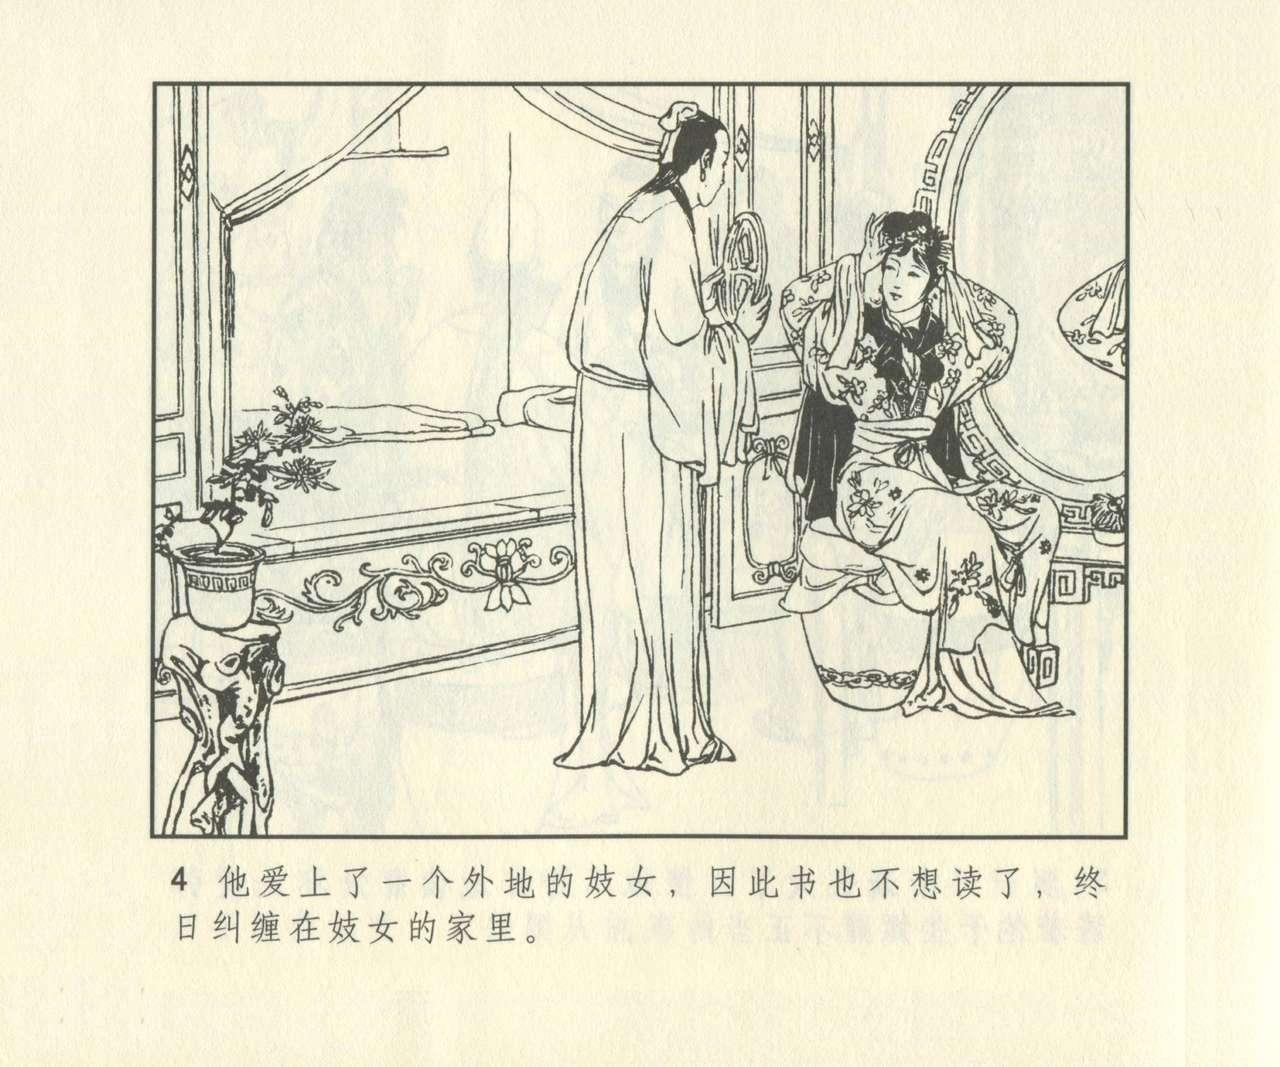 聊斋志异 张玮等绘 天津人民美术出版社 卷二十一 ~ 三十 620